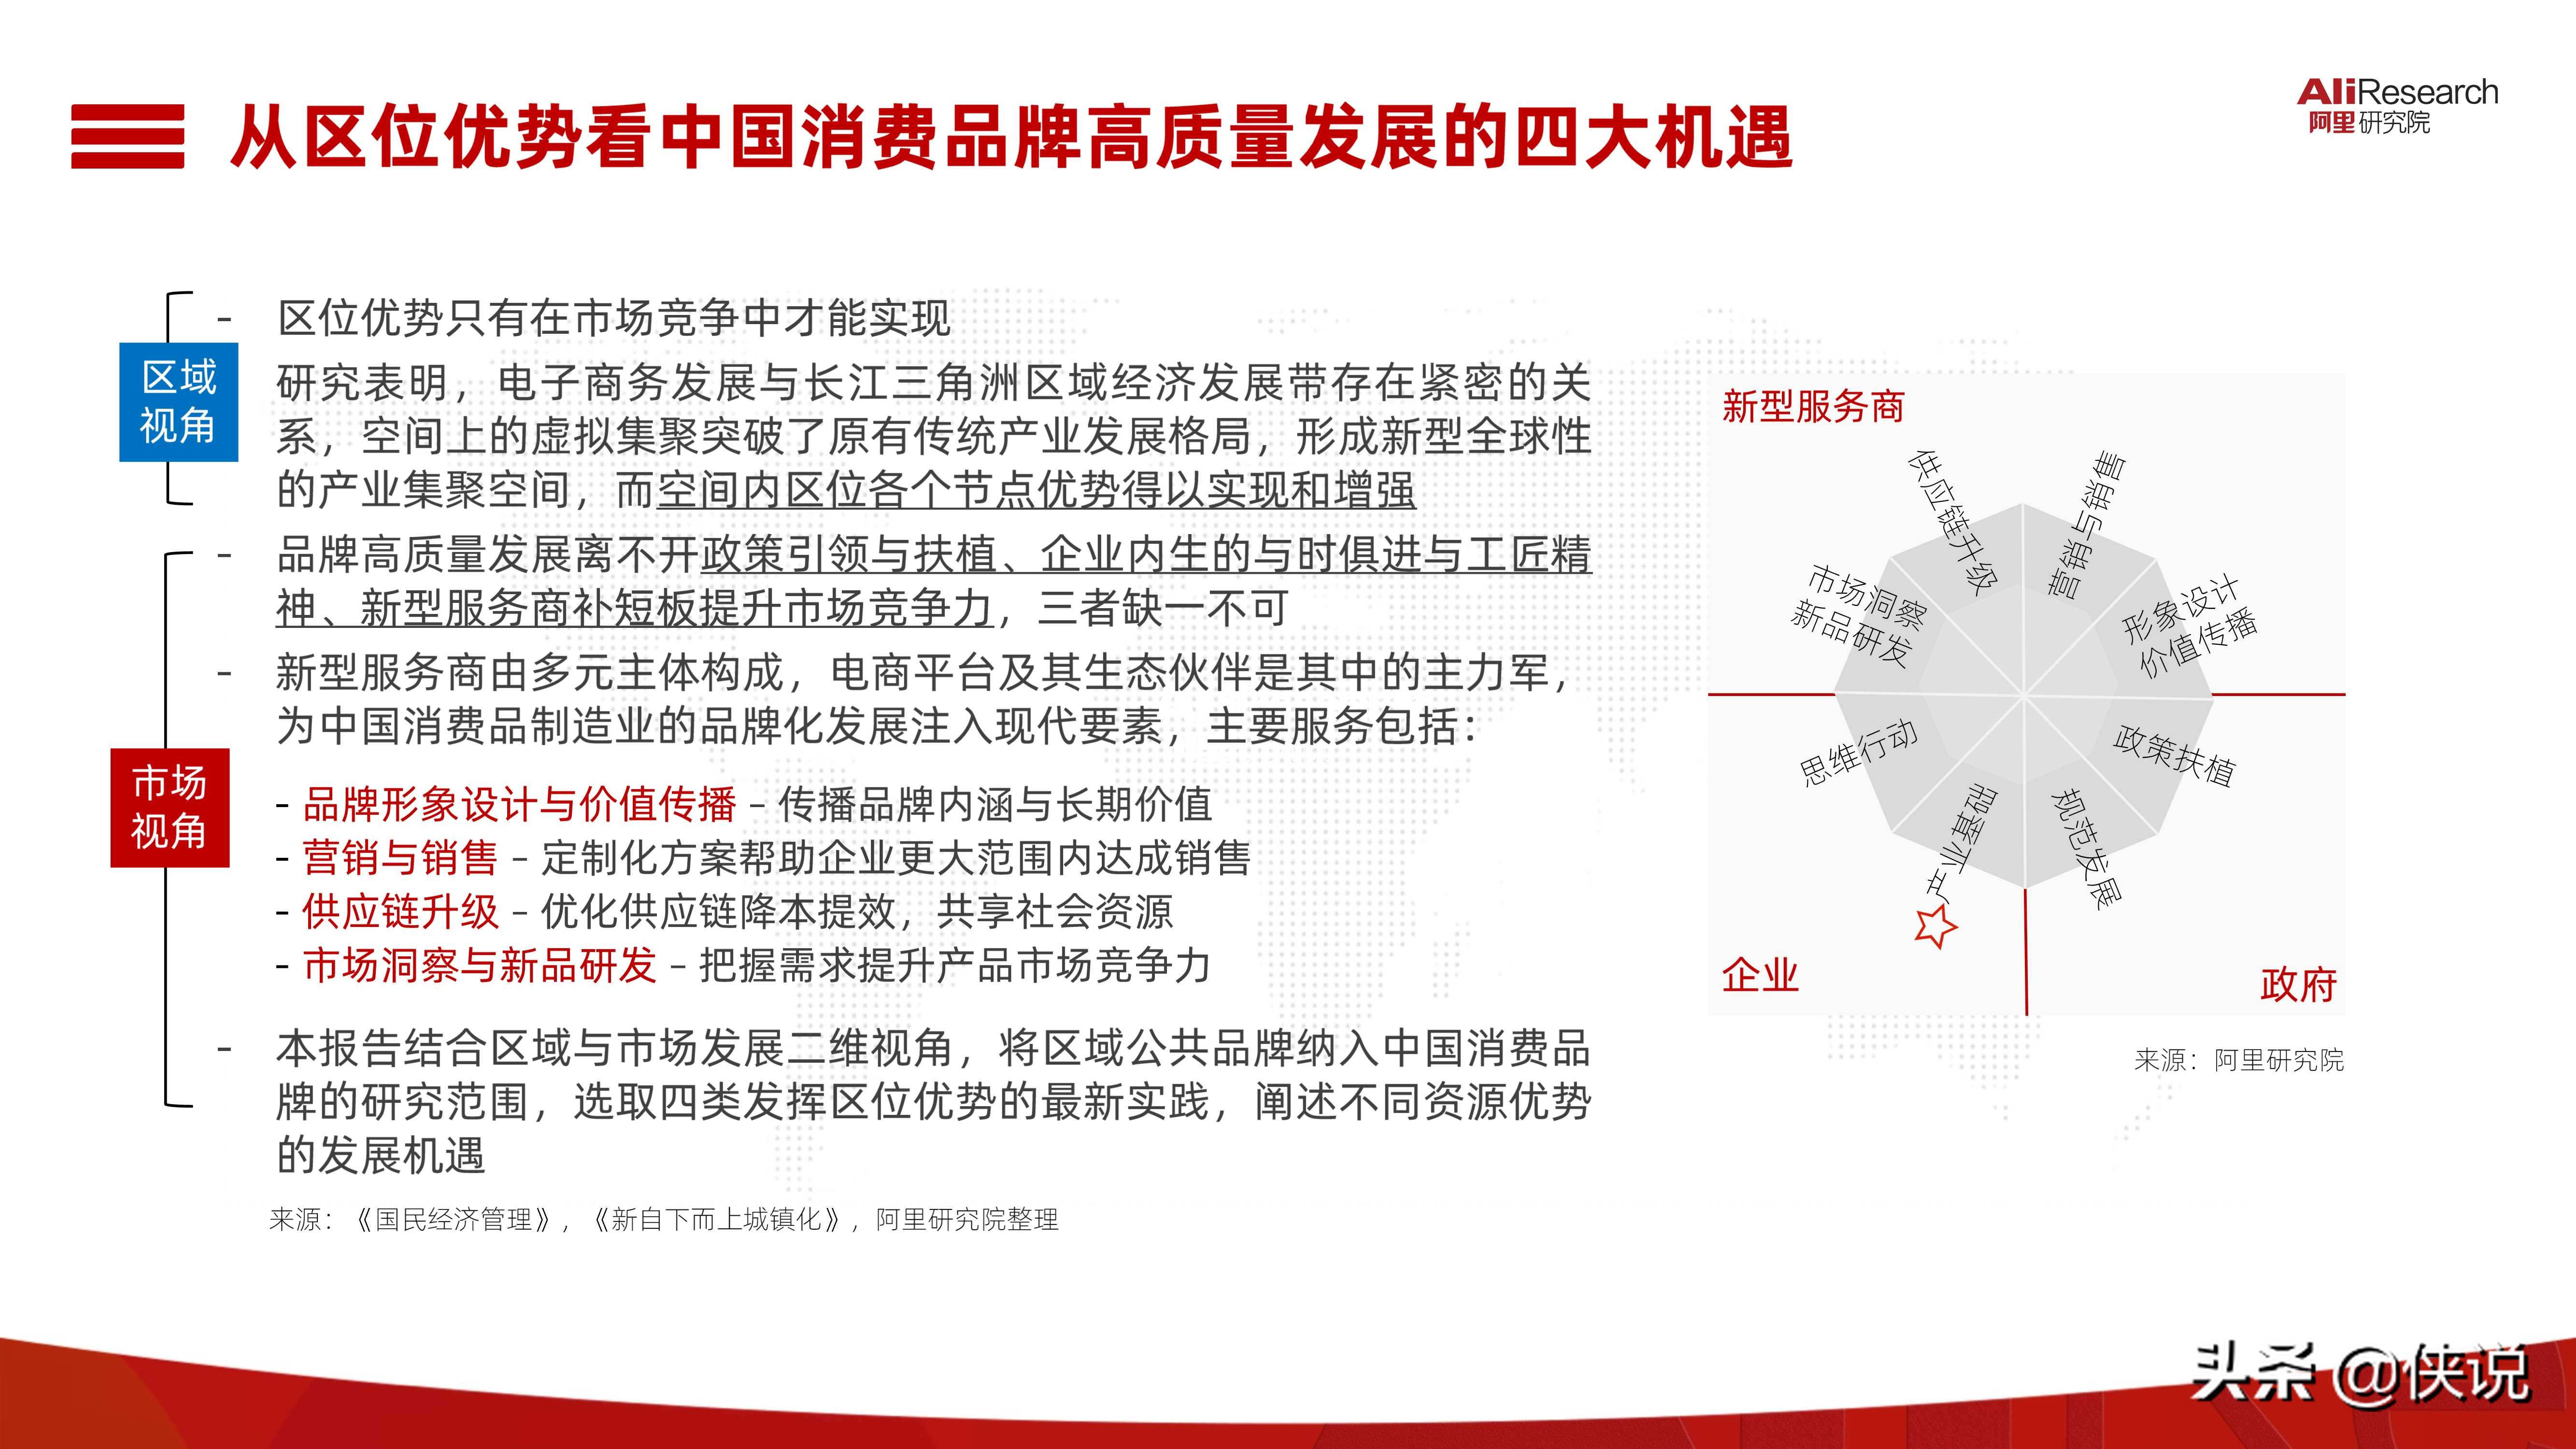 2021中国消费品牌发展报告（阿里研究院）